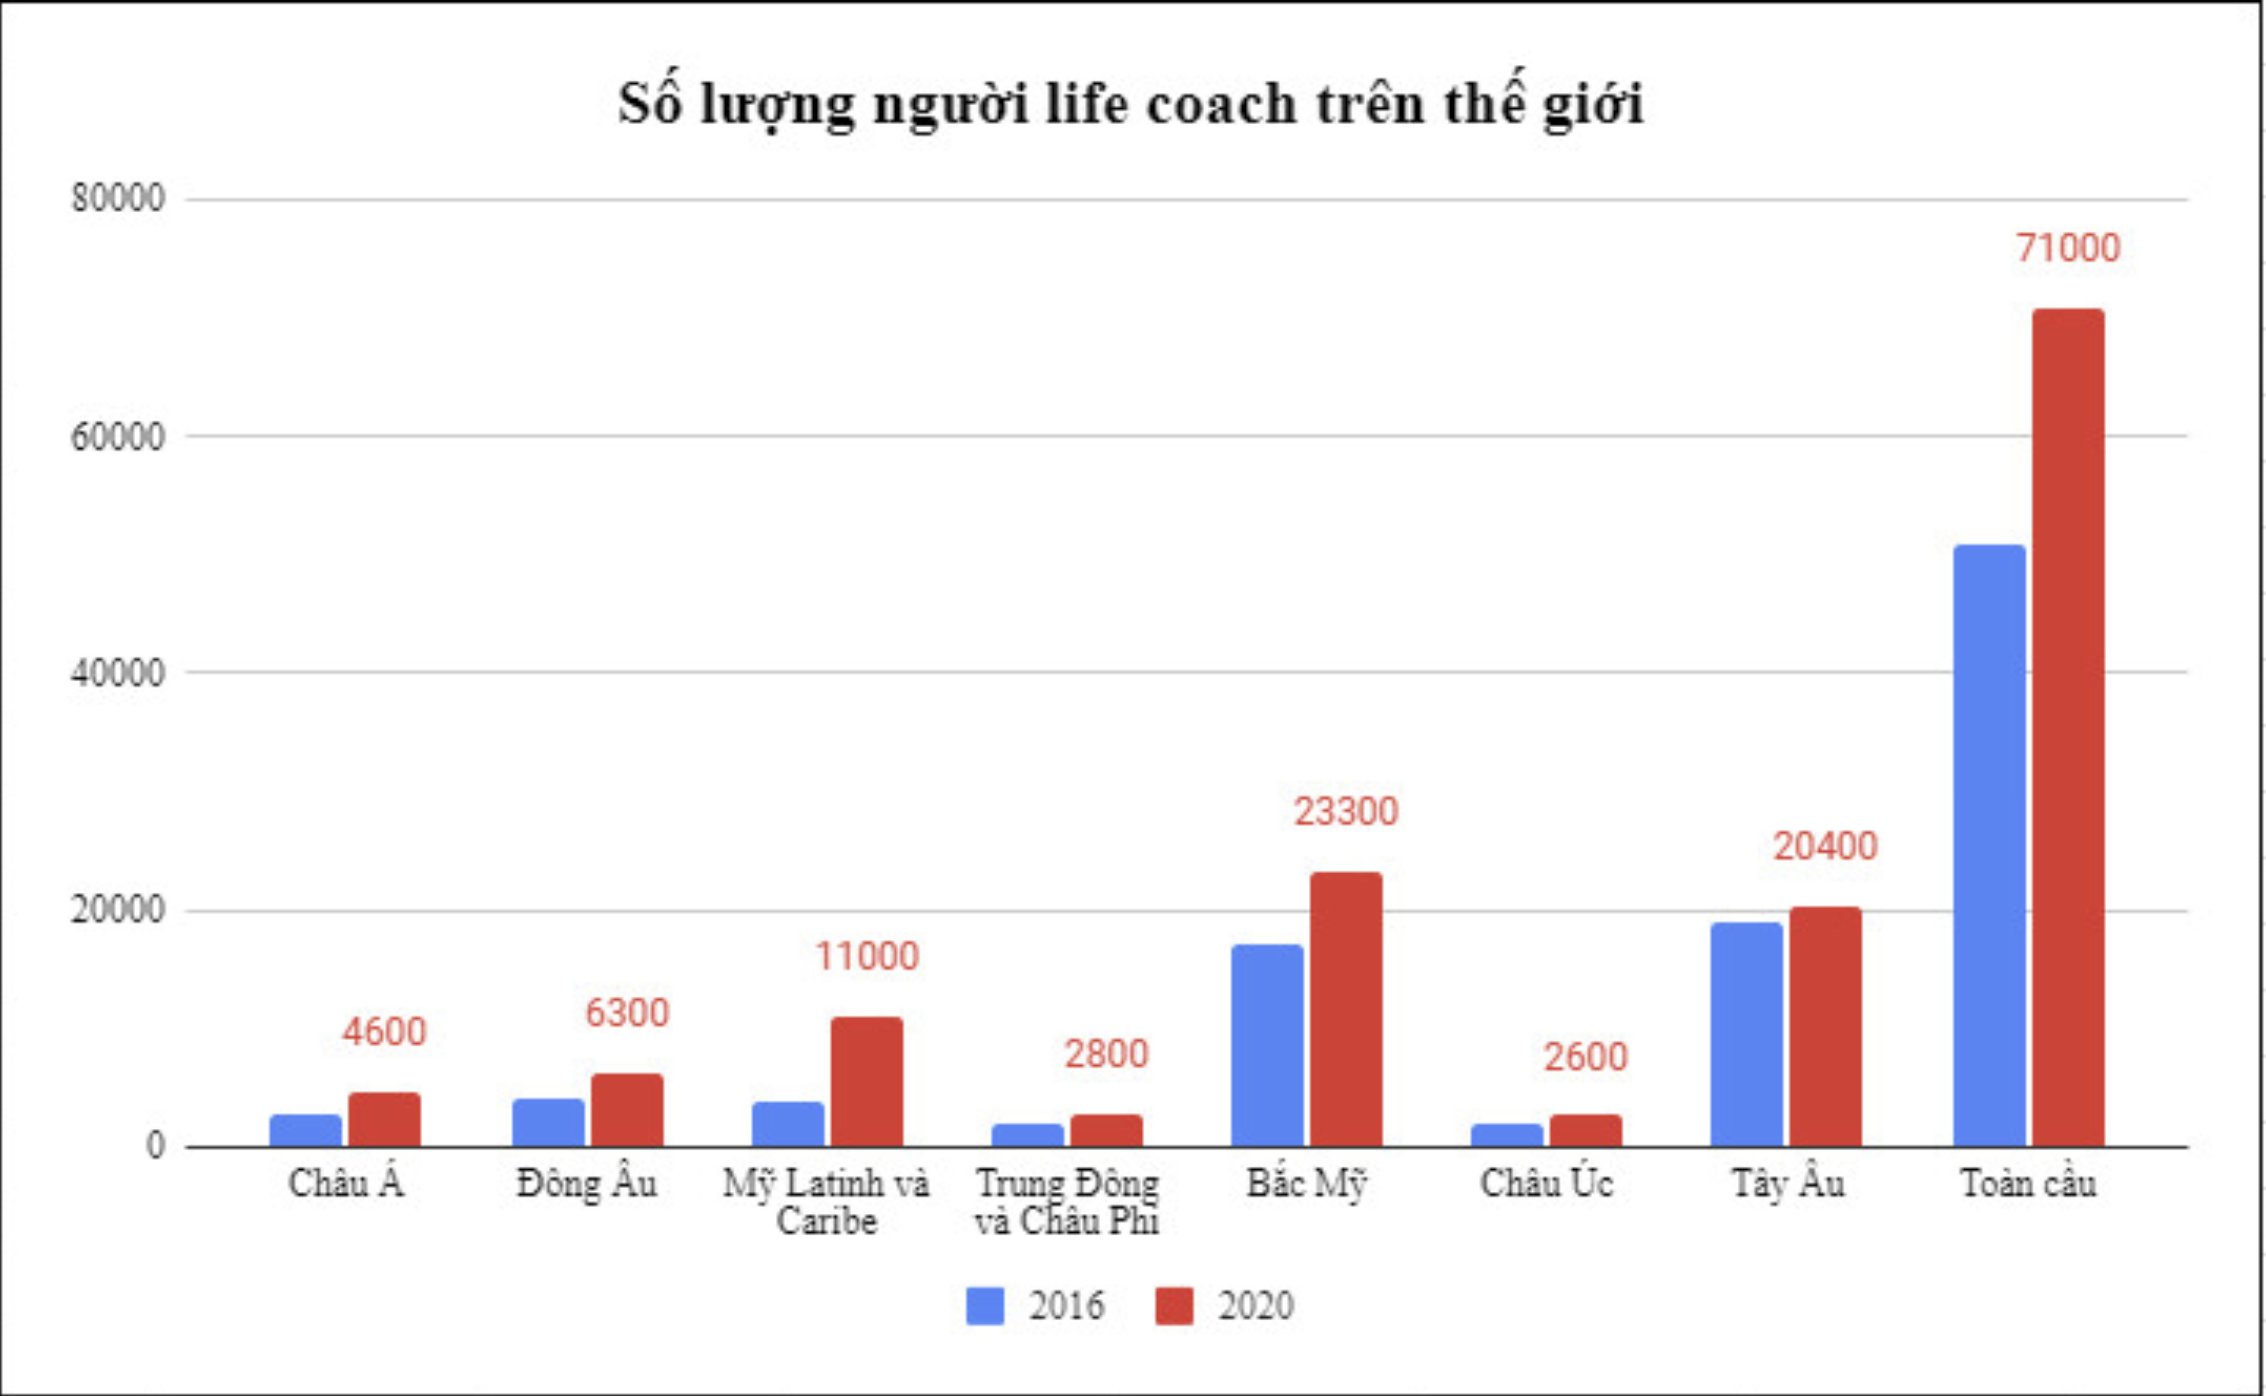 Tiềm năng phát triển nghề Life Coach tại Việt Nam - 1